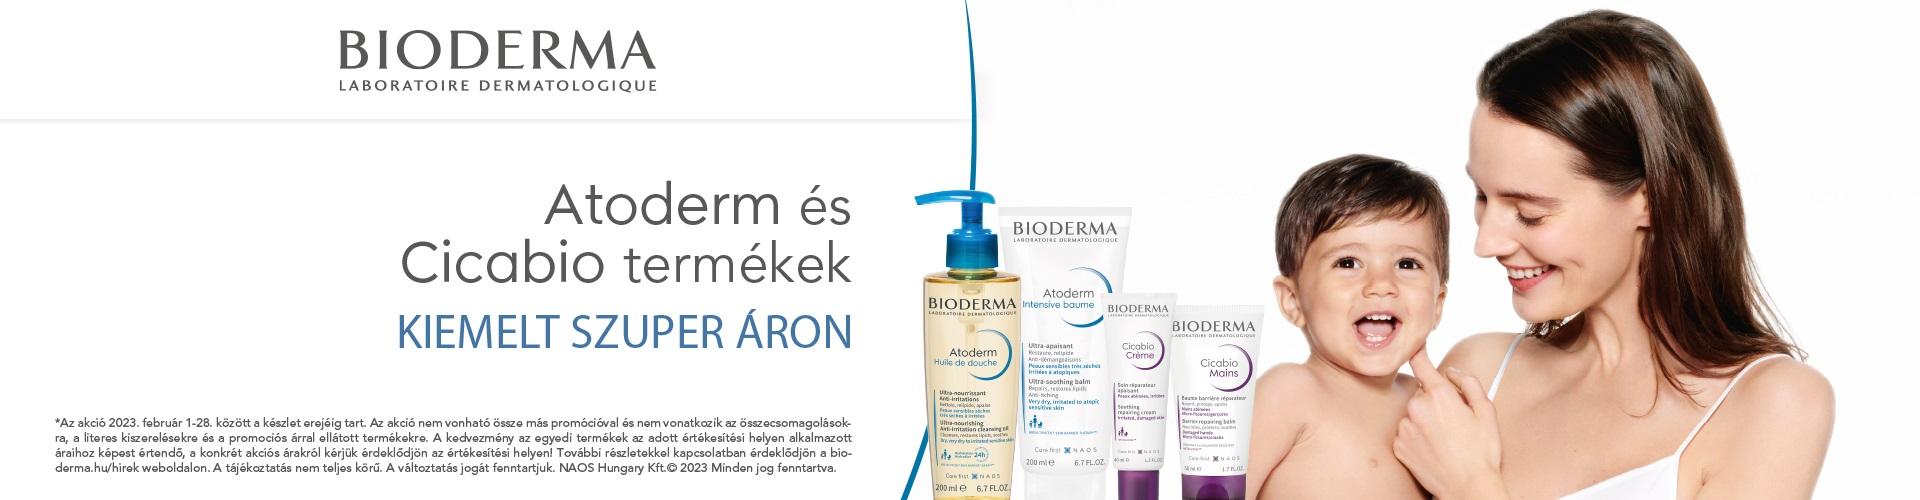 2022. október 1. és december 31. között kiemelt szuper áron adunk minden Bioderma Atoderm terméket!